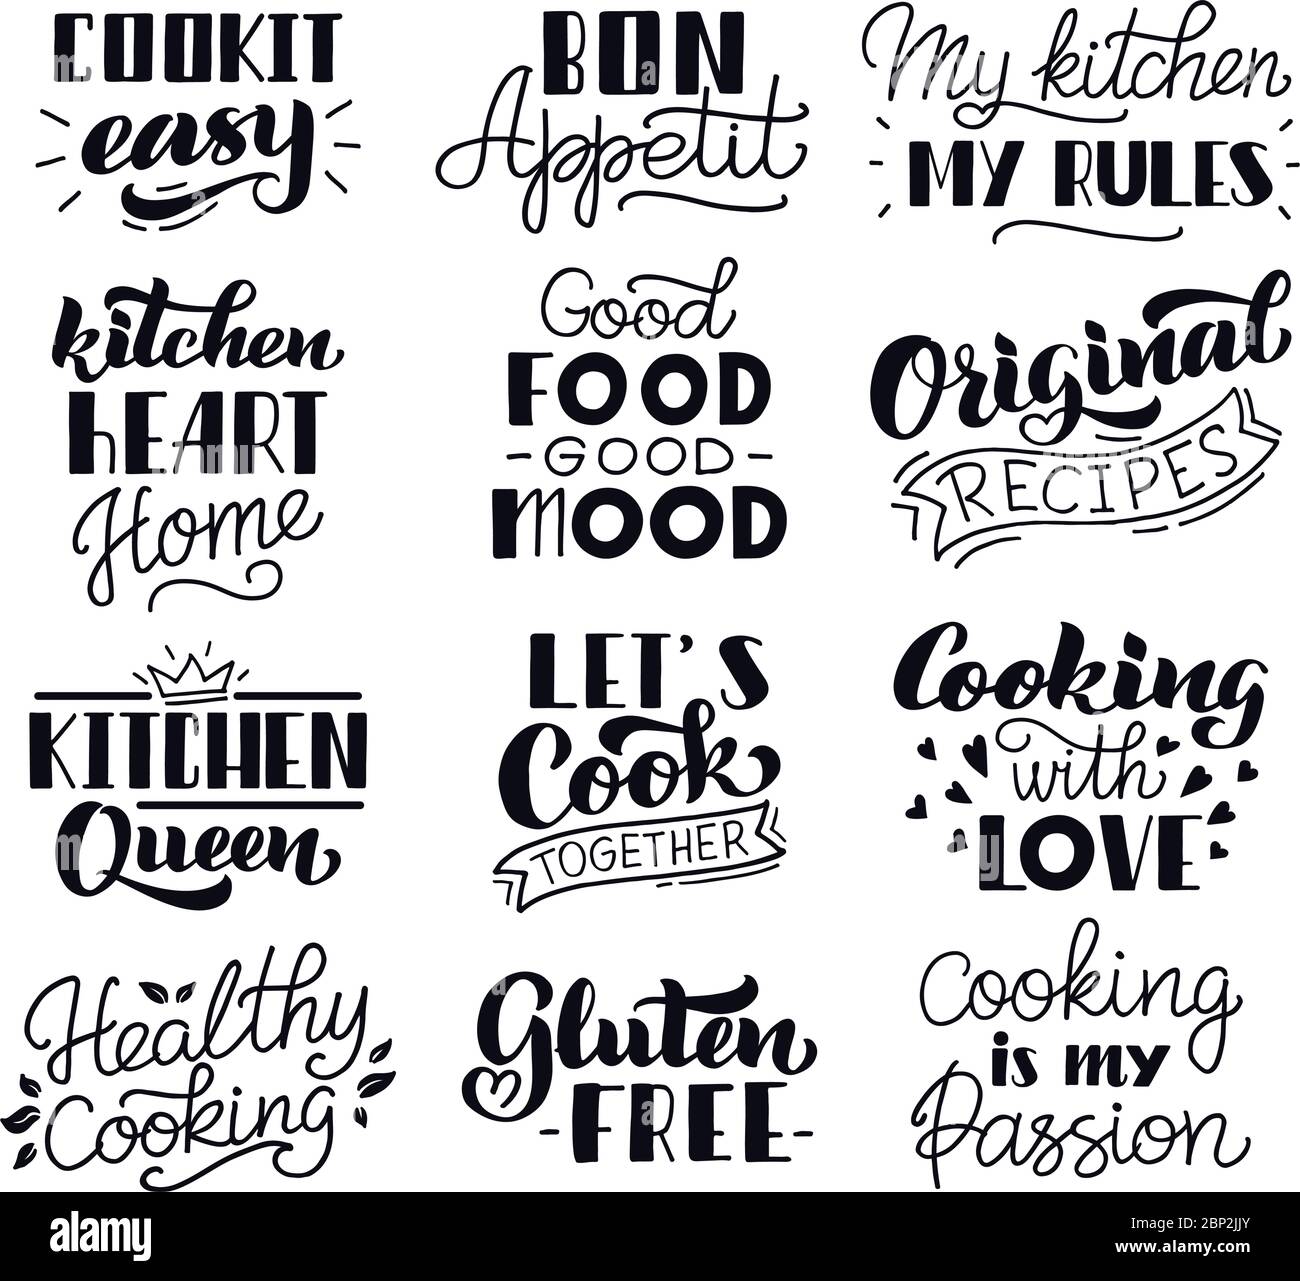 Scritta per la cucina degli alimenti. Cucina tipografia disegnata